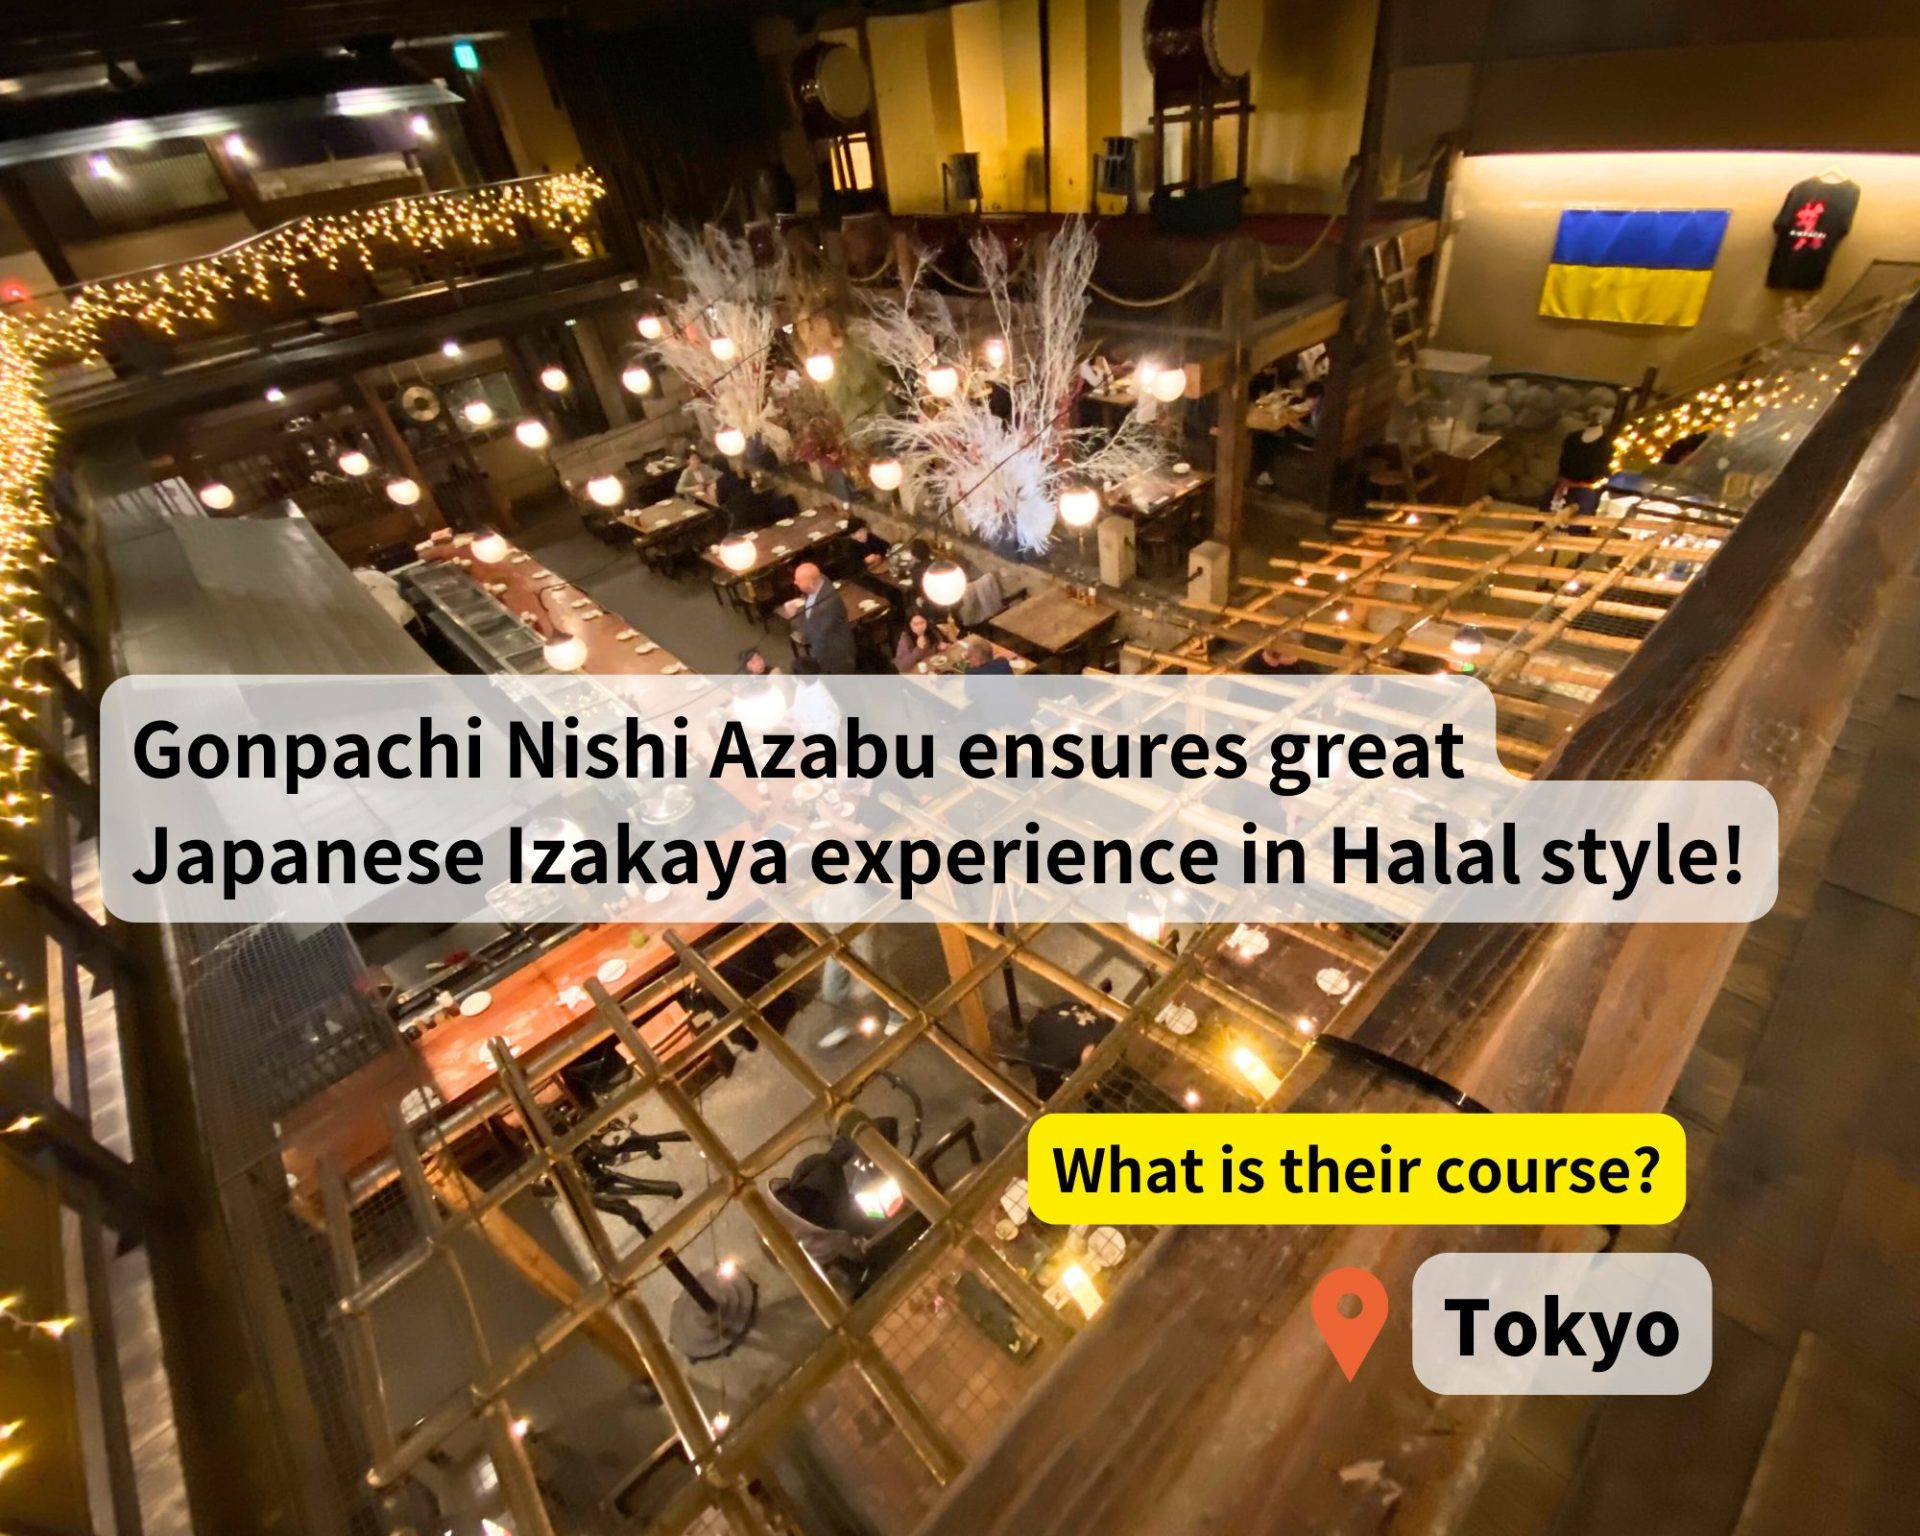 halal course at Nishi Azabu Gonpachi